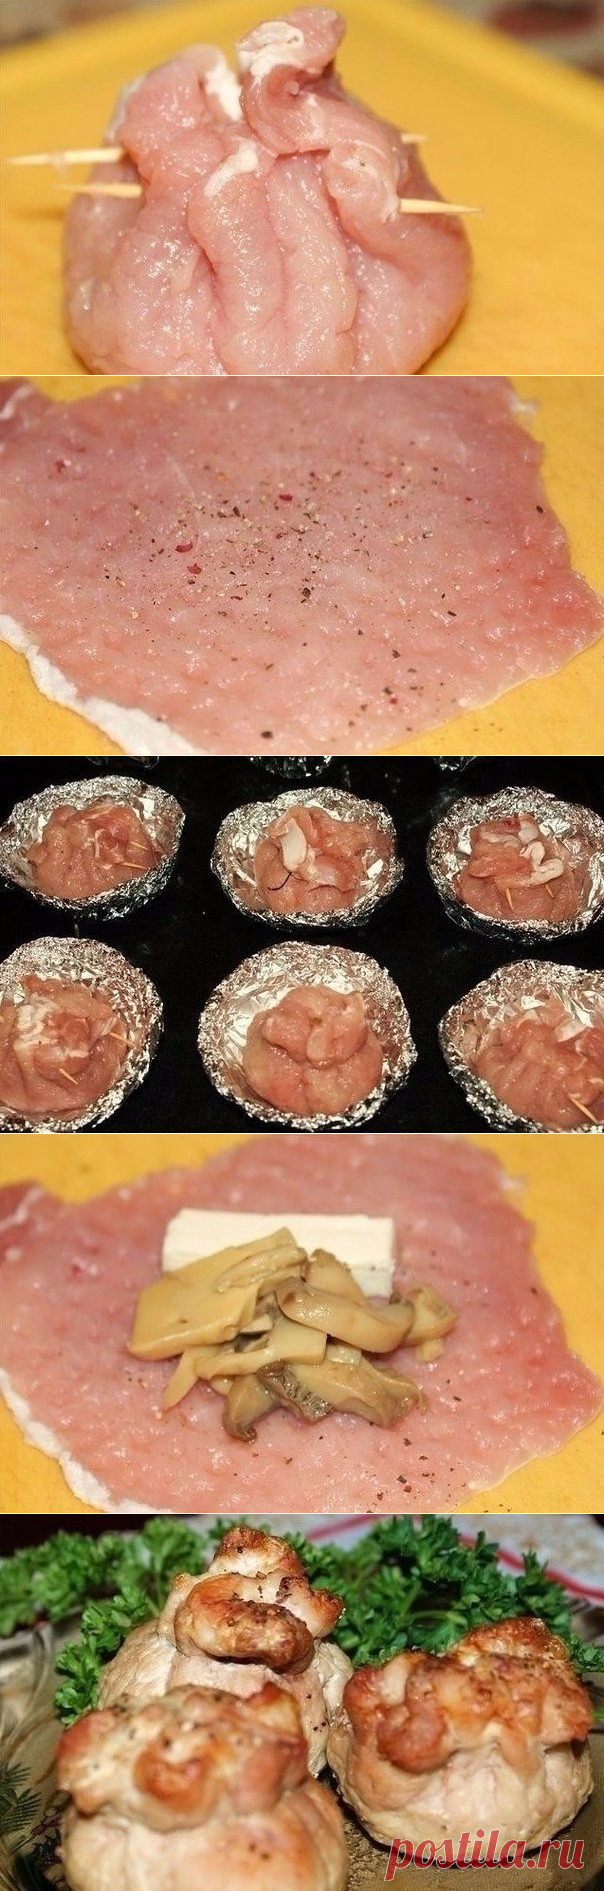 Как приготовить мешочки с сыром и грибами - рецепт, ингридиенты и фотографии